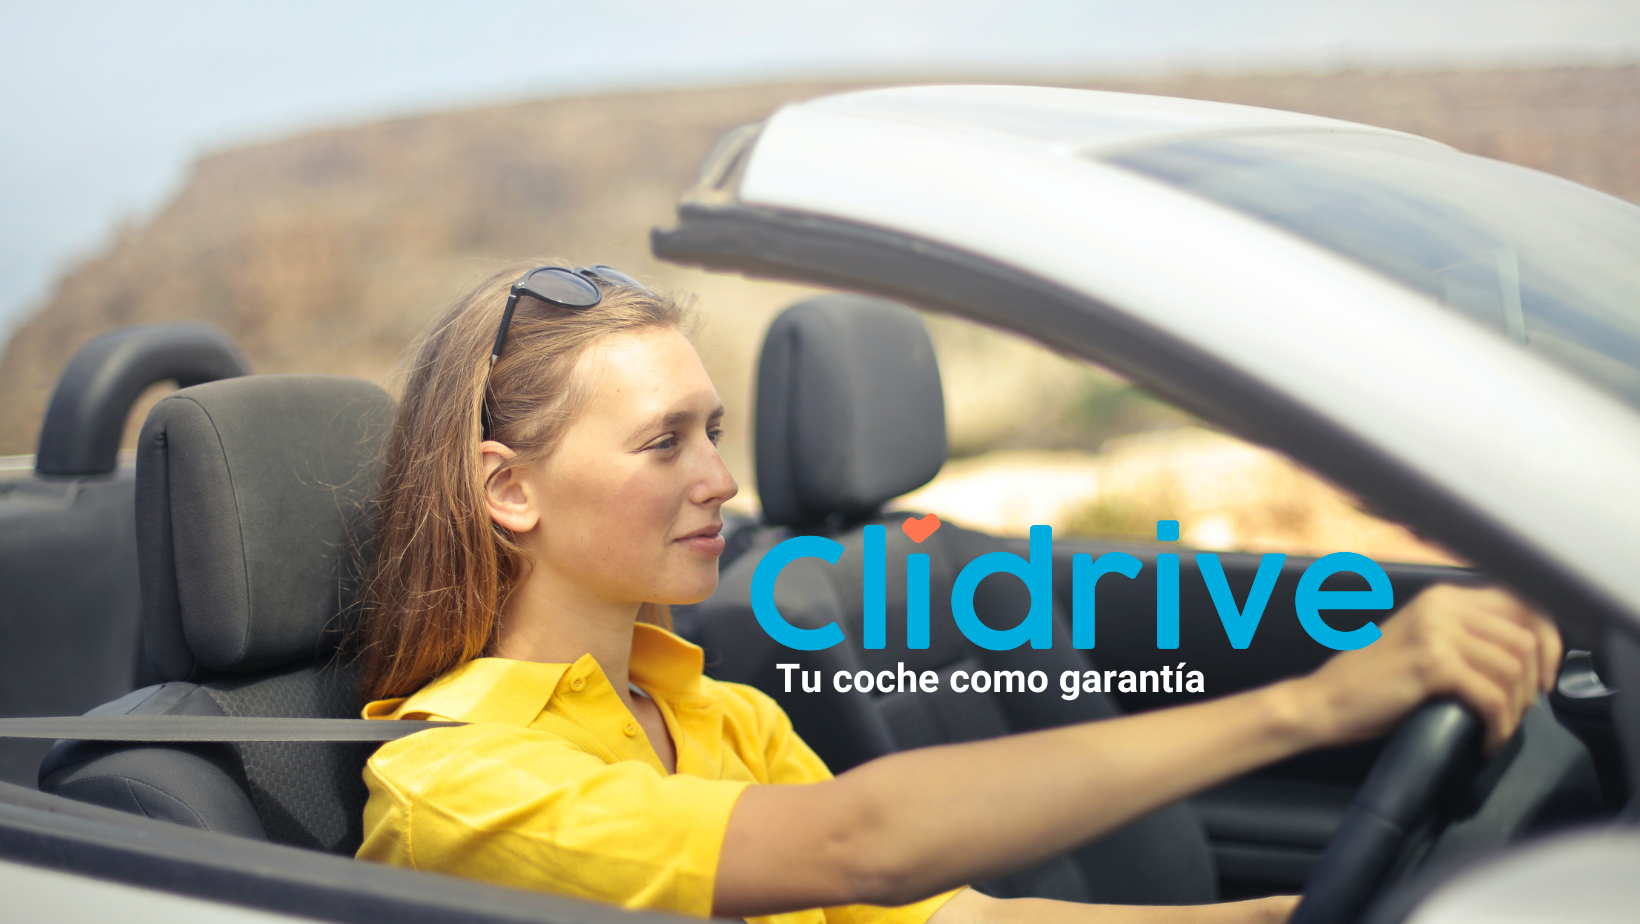 Descubre qué es un aval y cómo Clidrive te ayuda a obtener financiación y préstamos en las mejores condiciones, utilizando tu coche como garantía. ¡Infórmate ahora!